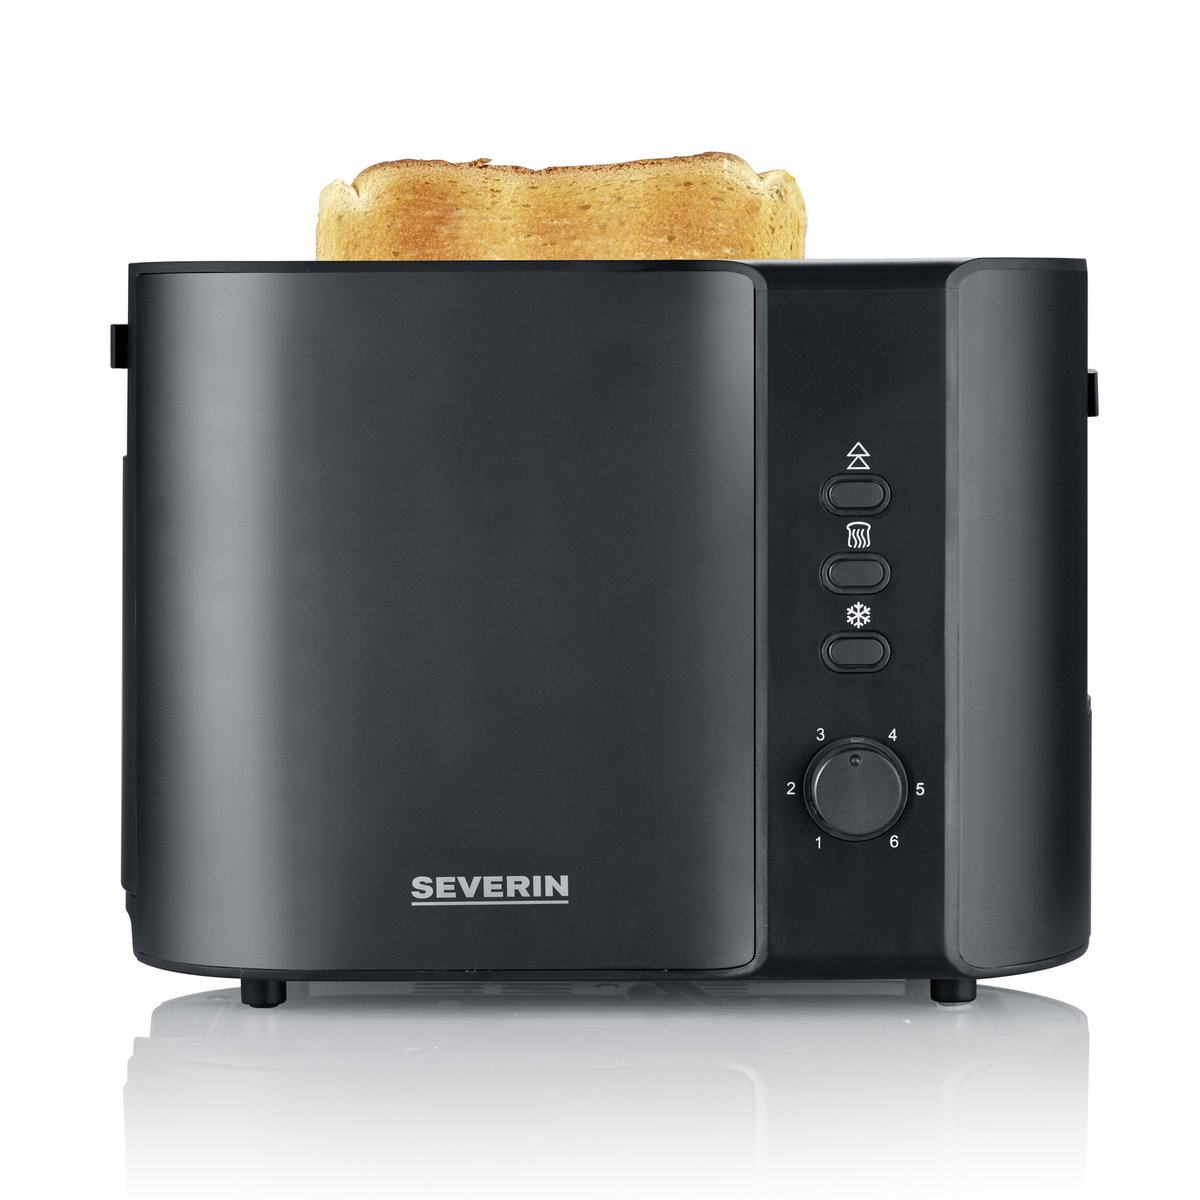 SEVERIN - Tostadora automática, tostador con accesorio para pan, tostador  de acero inoxidable para tostar, descongelar y calentar, 800 W, Negro mate  AT 9552 - Conforama